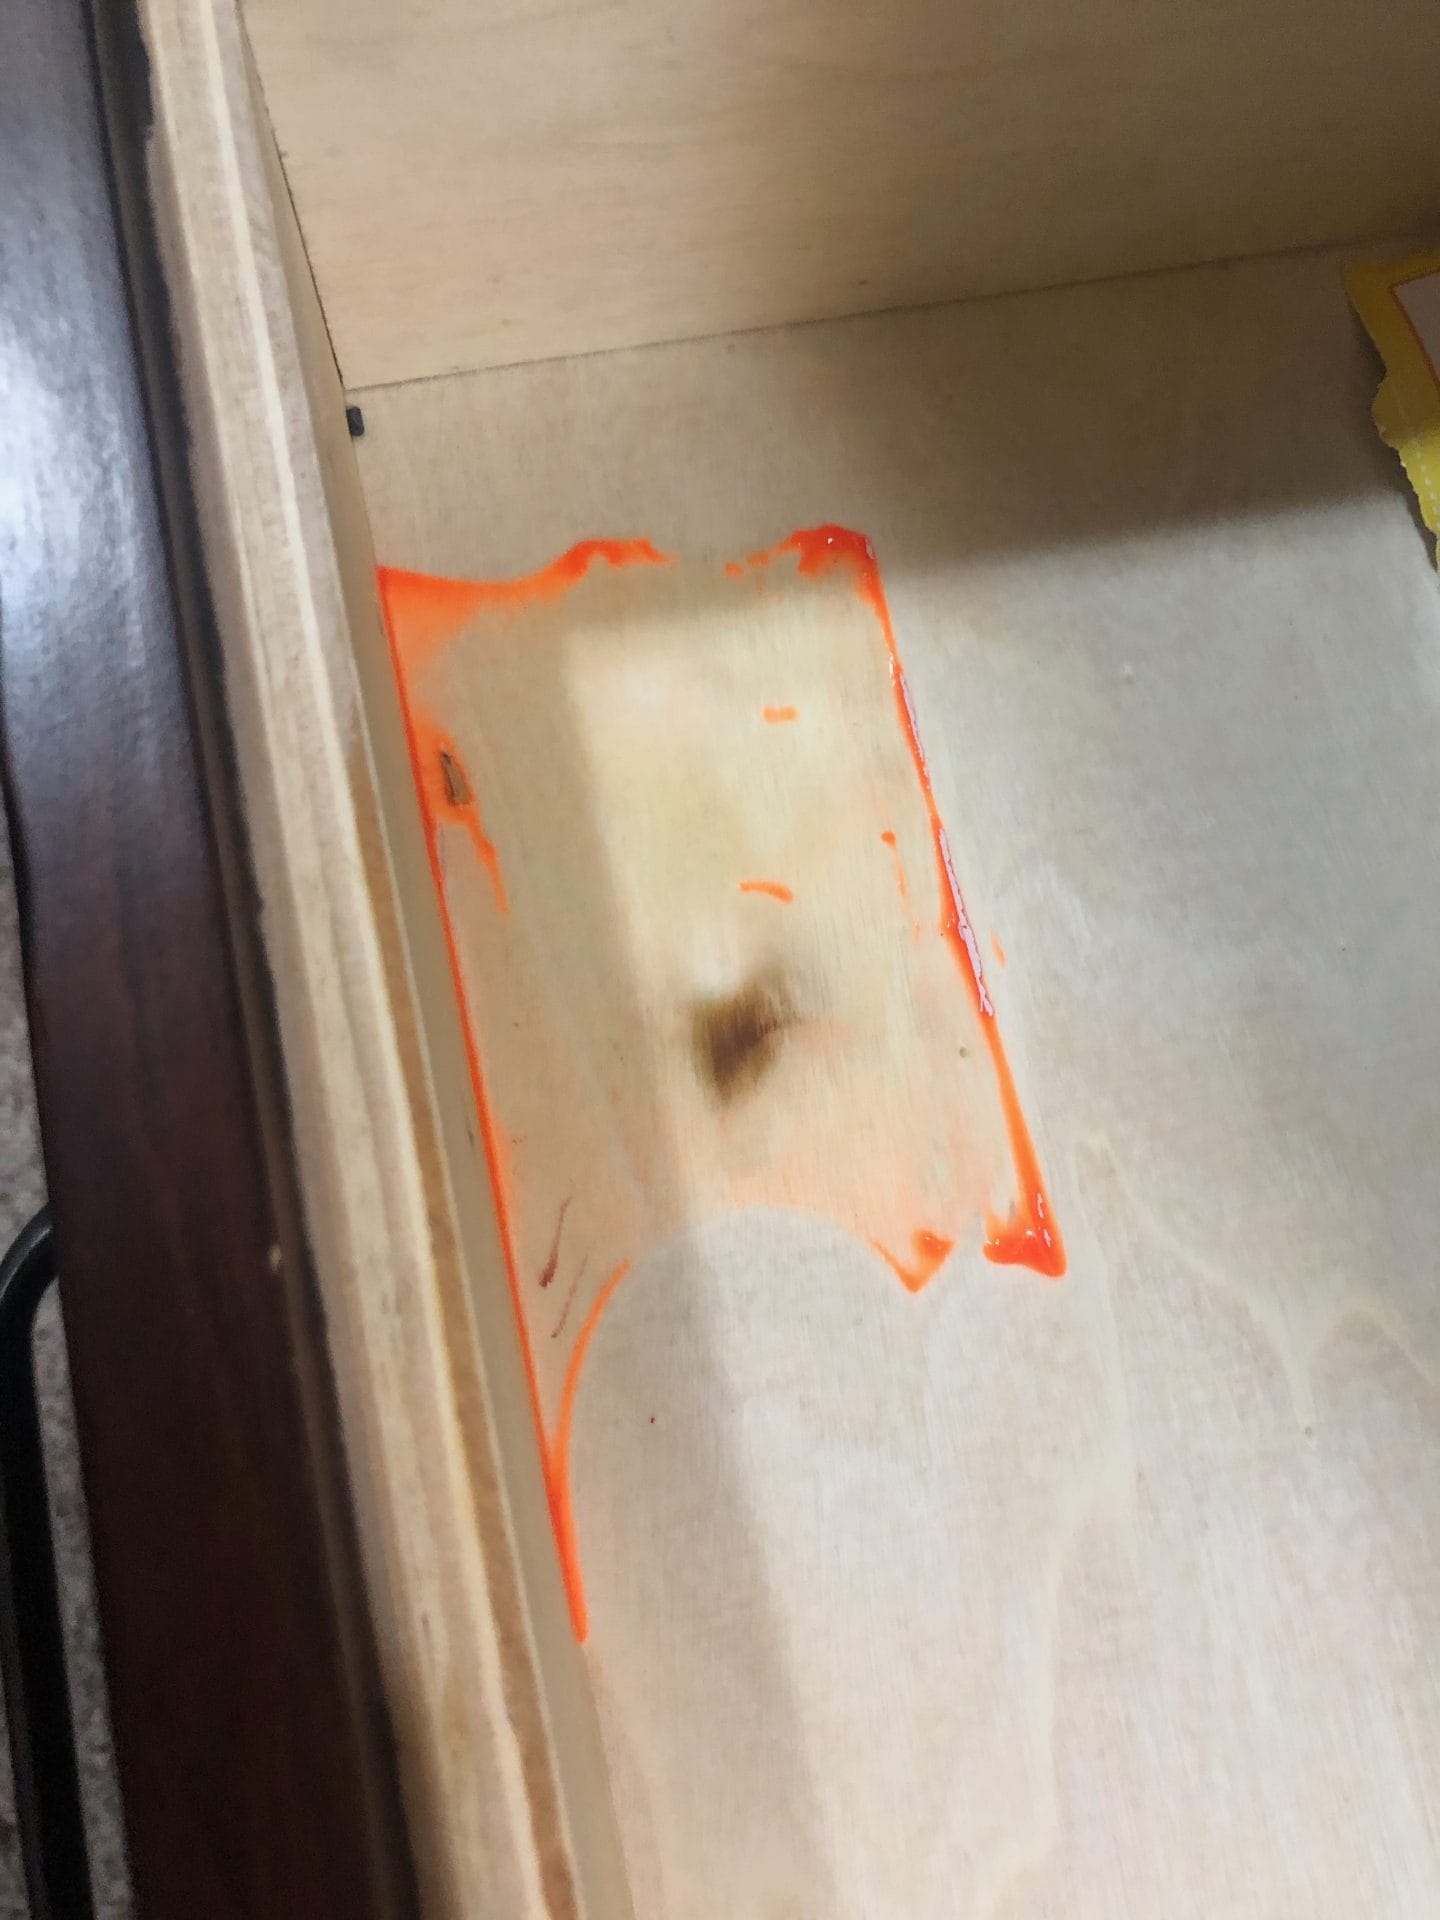 slime inside drawer